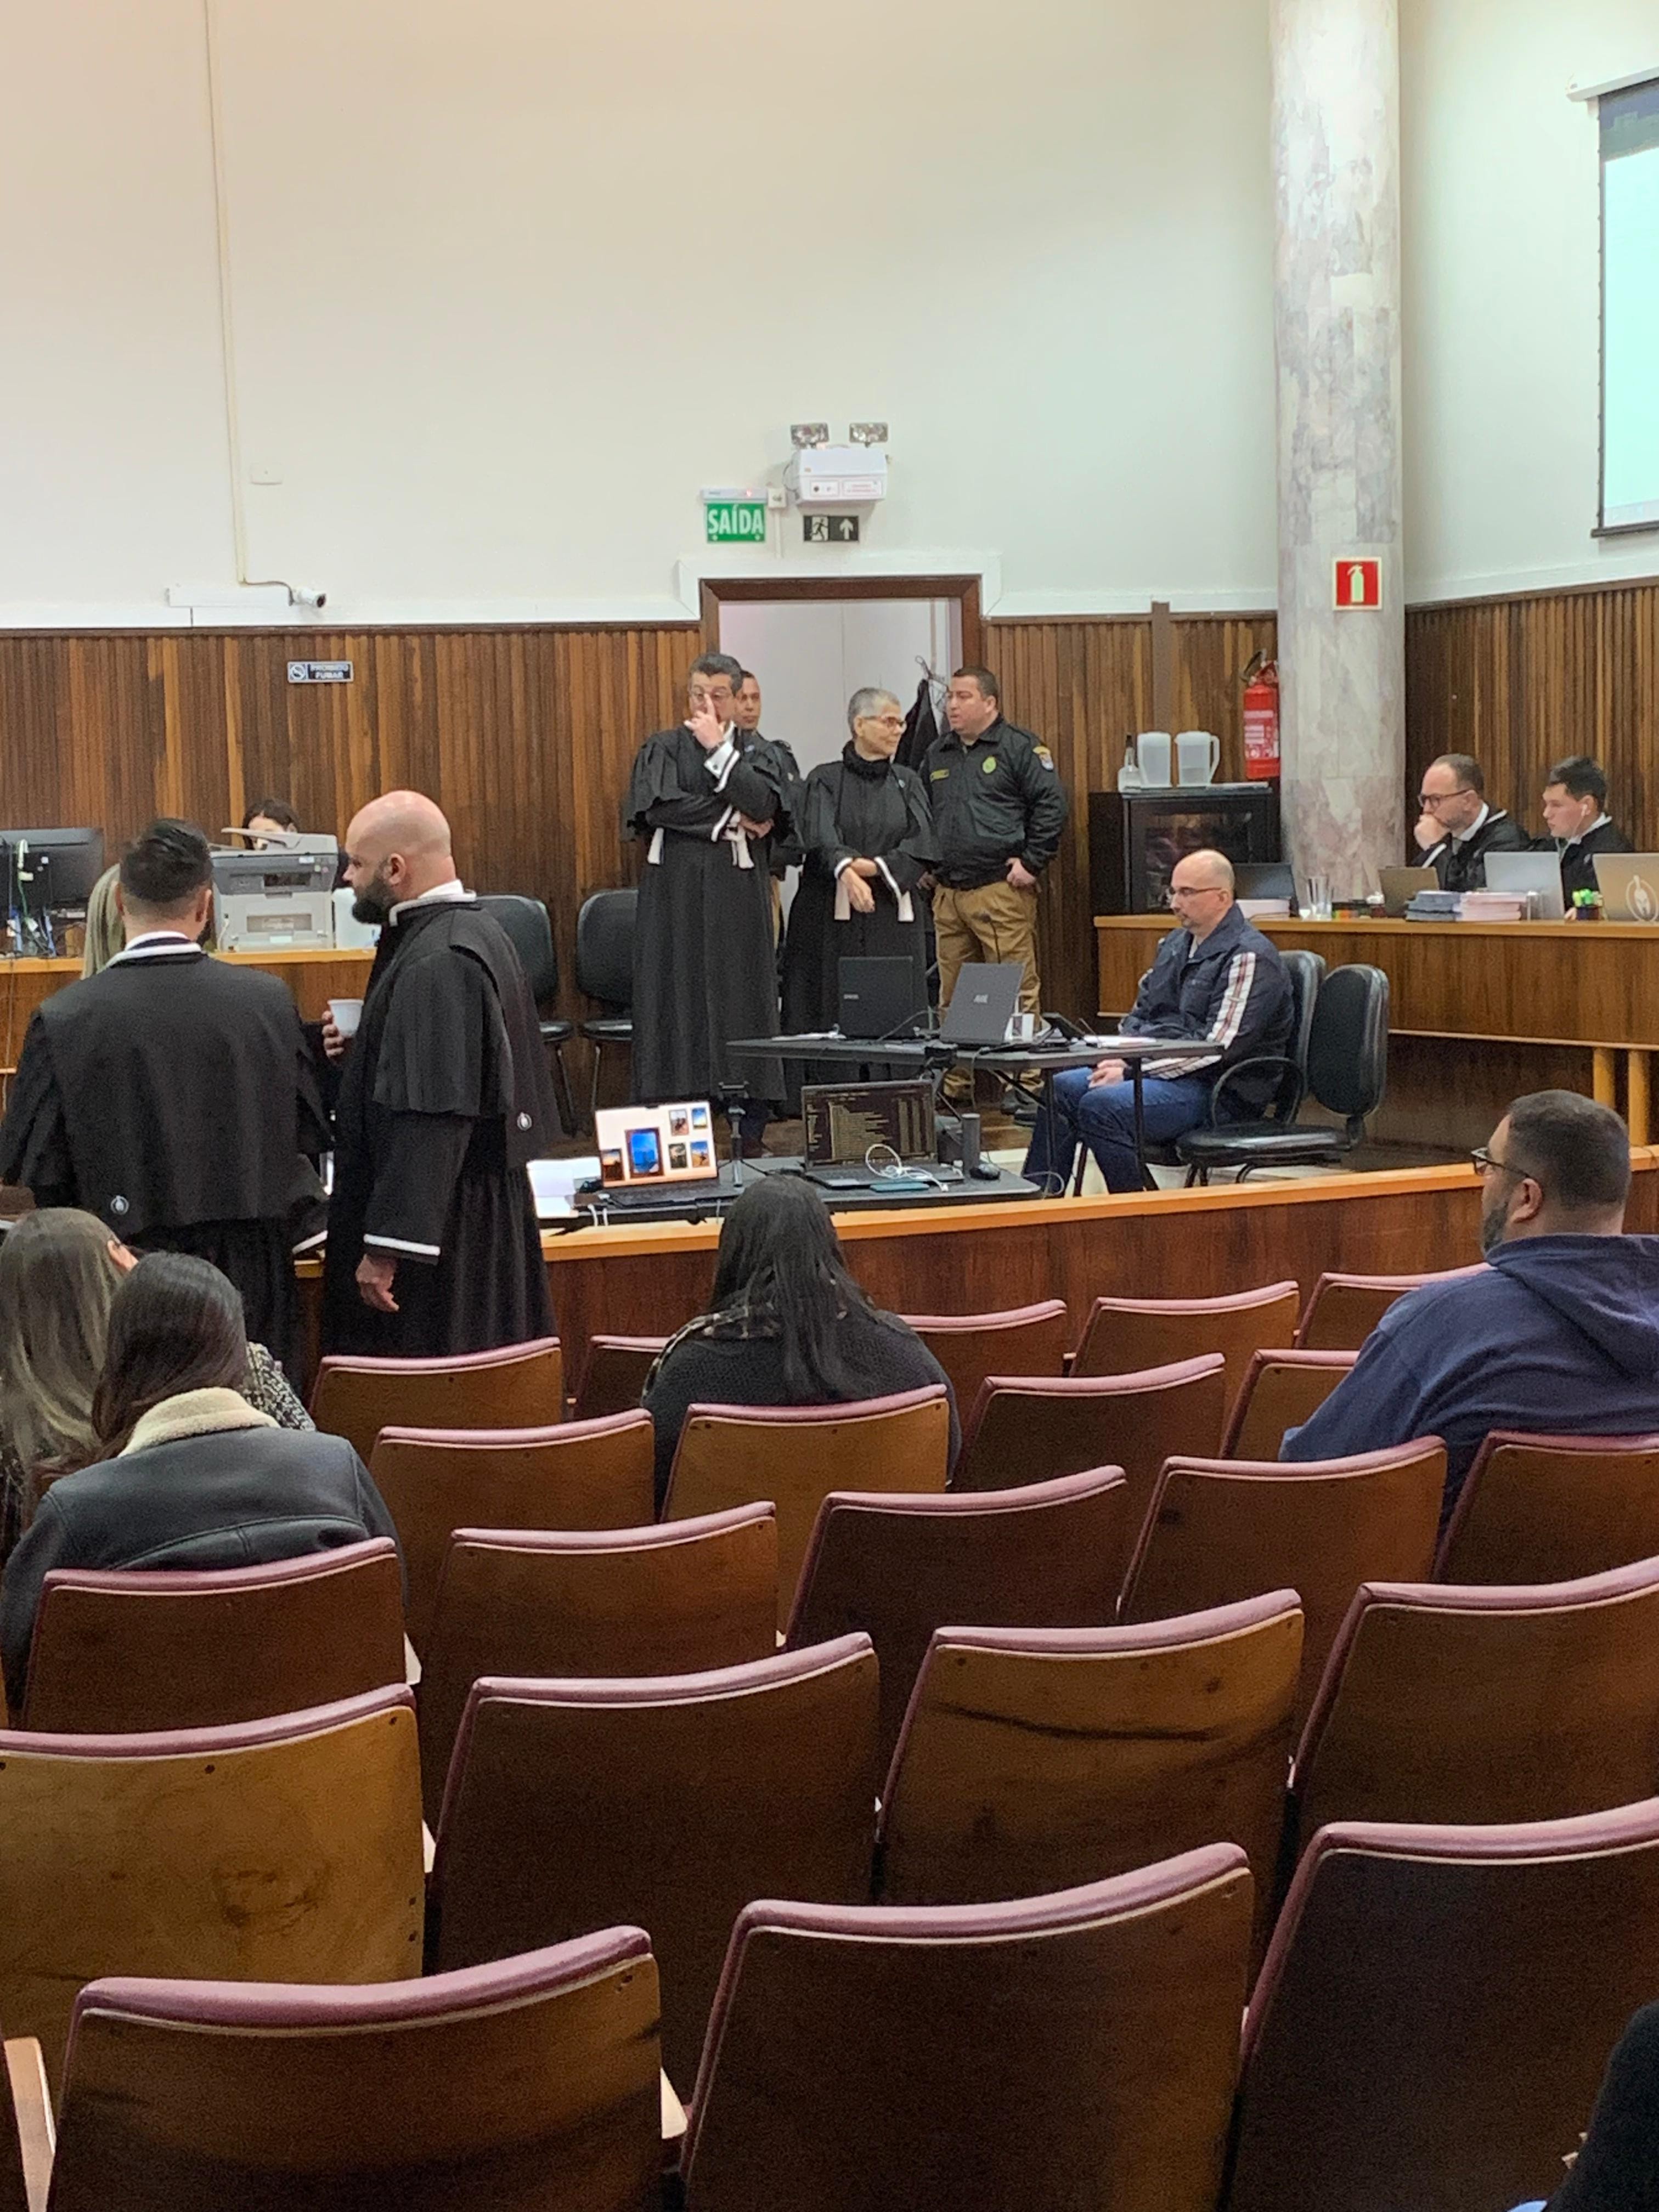 Termina 1º dia do júri popular de delegado acusado de matar esposa e enteada em Curitiba; relembre o crime